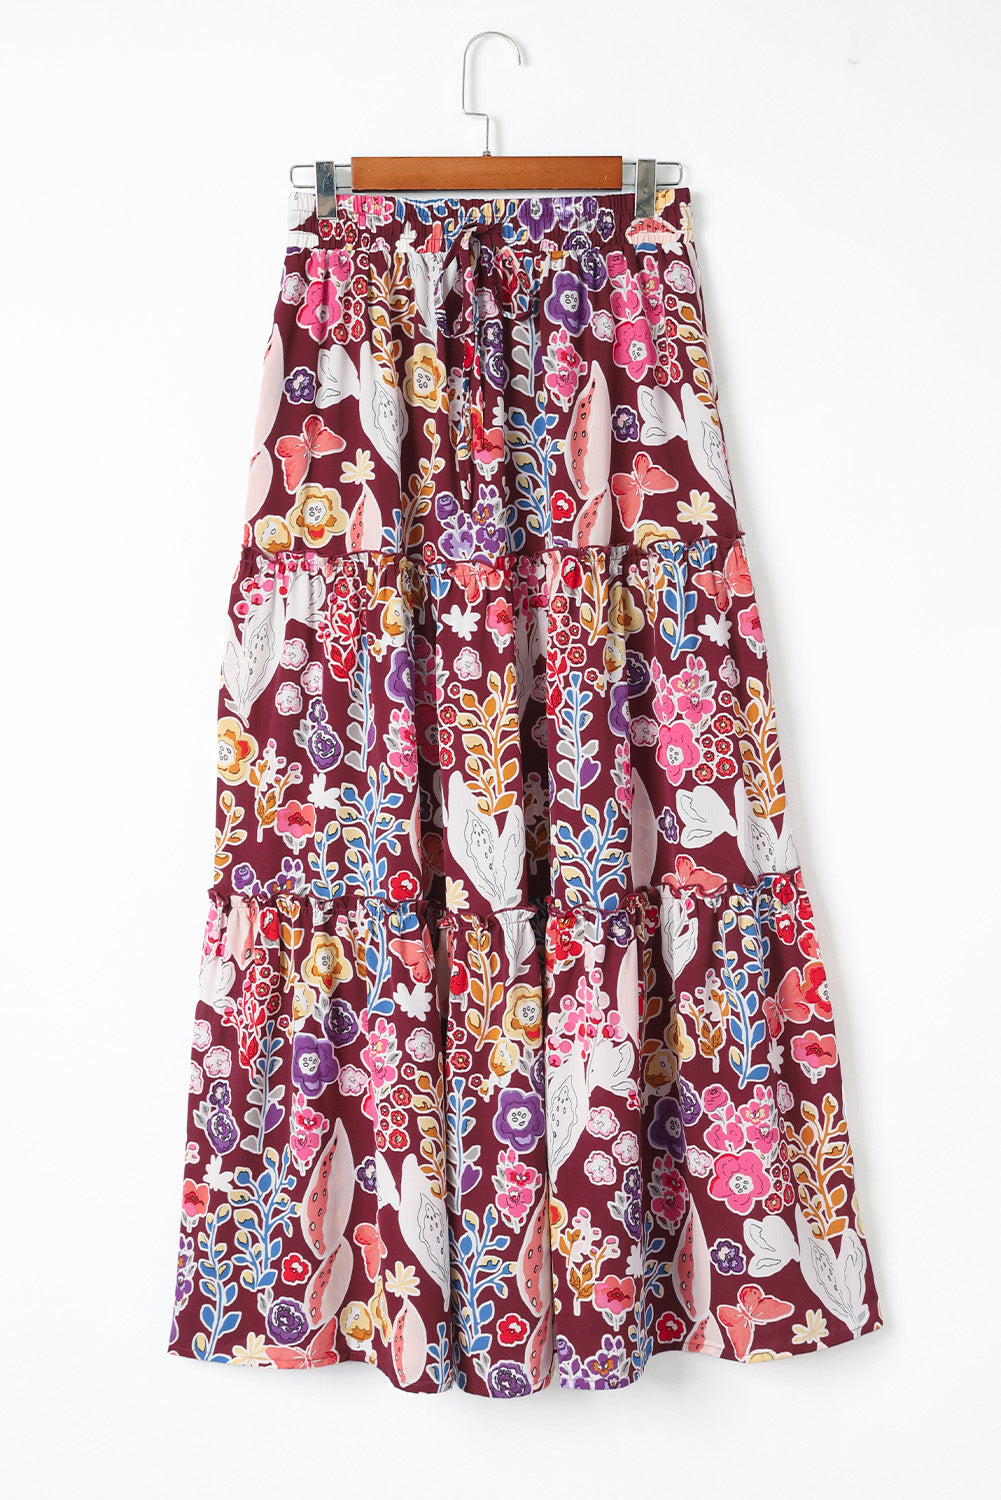 Multicolor Boho Floral Print High Waist Maxi Skirt